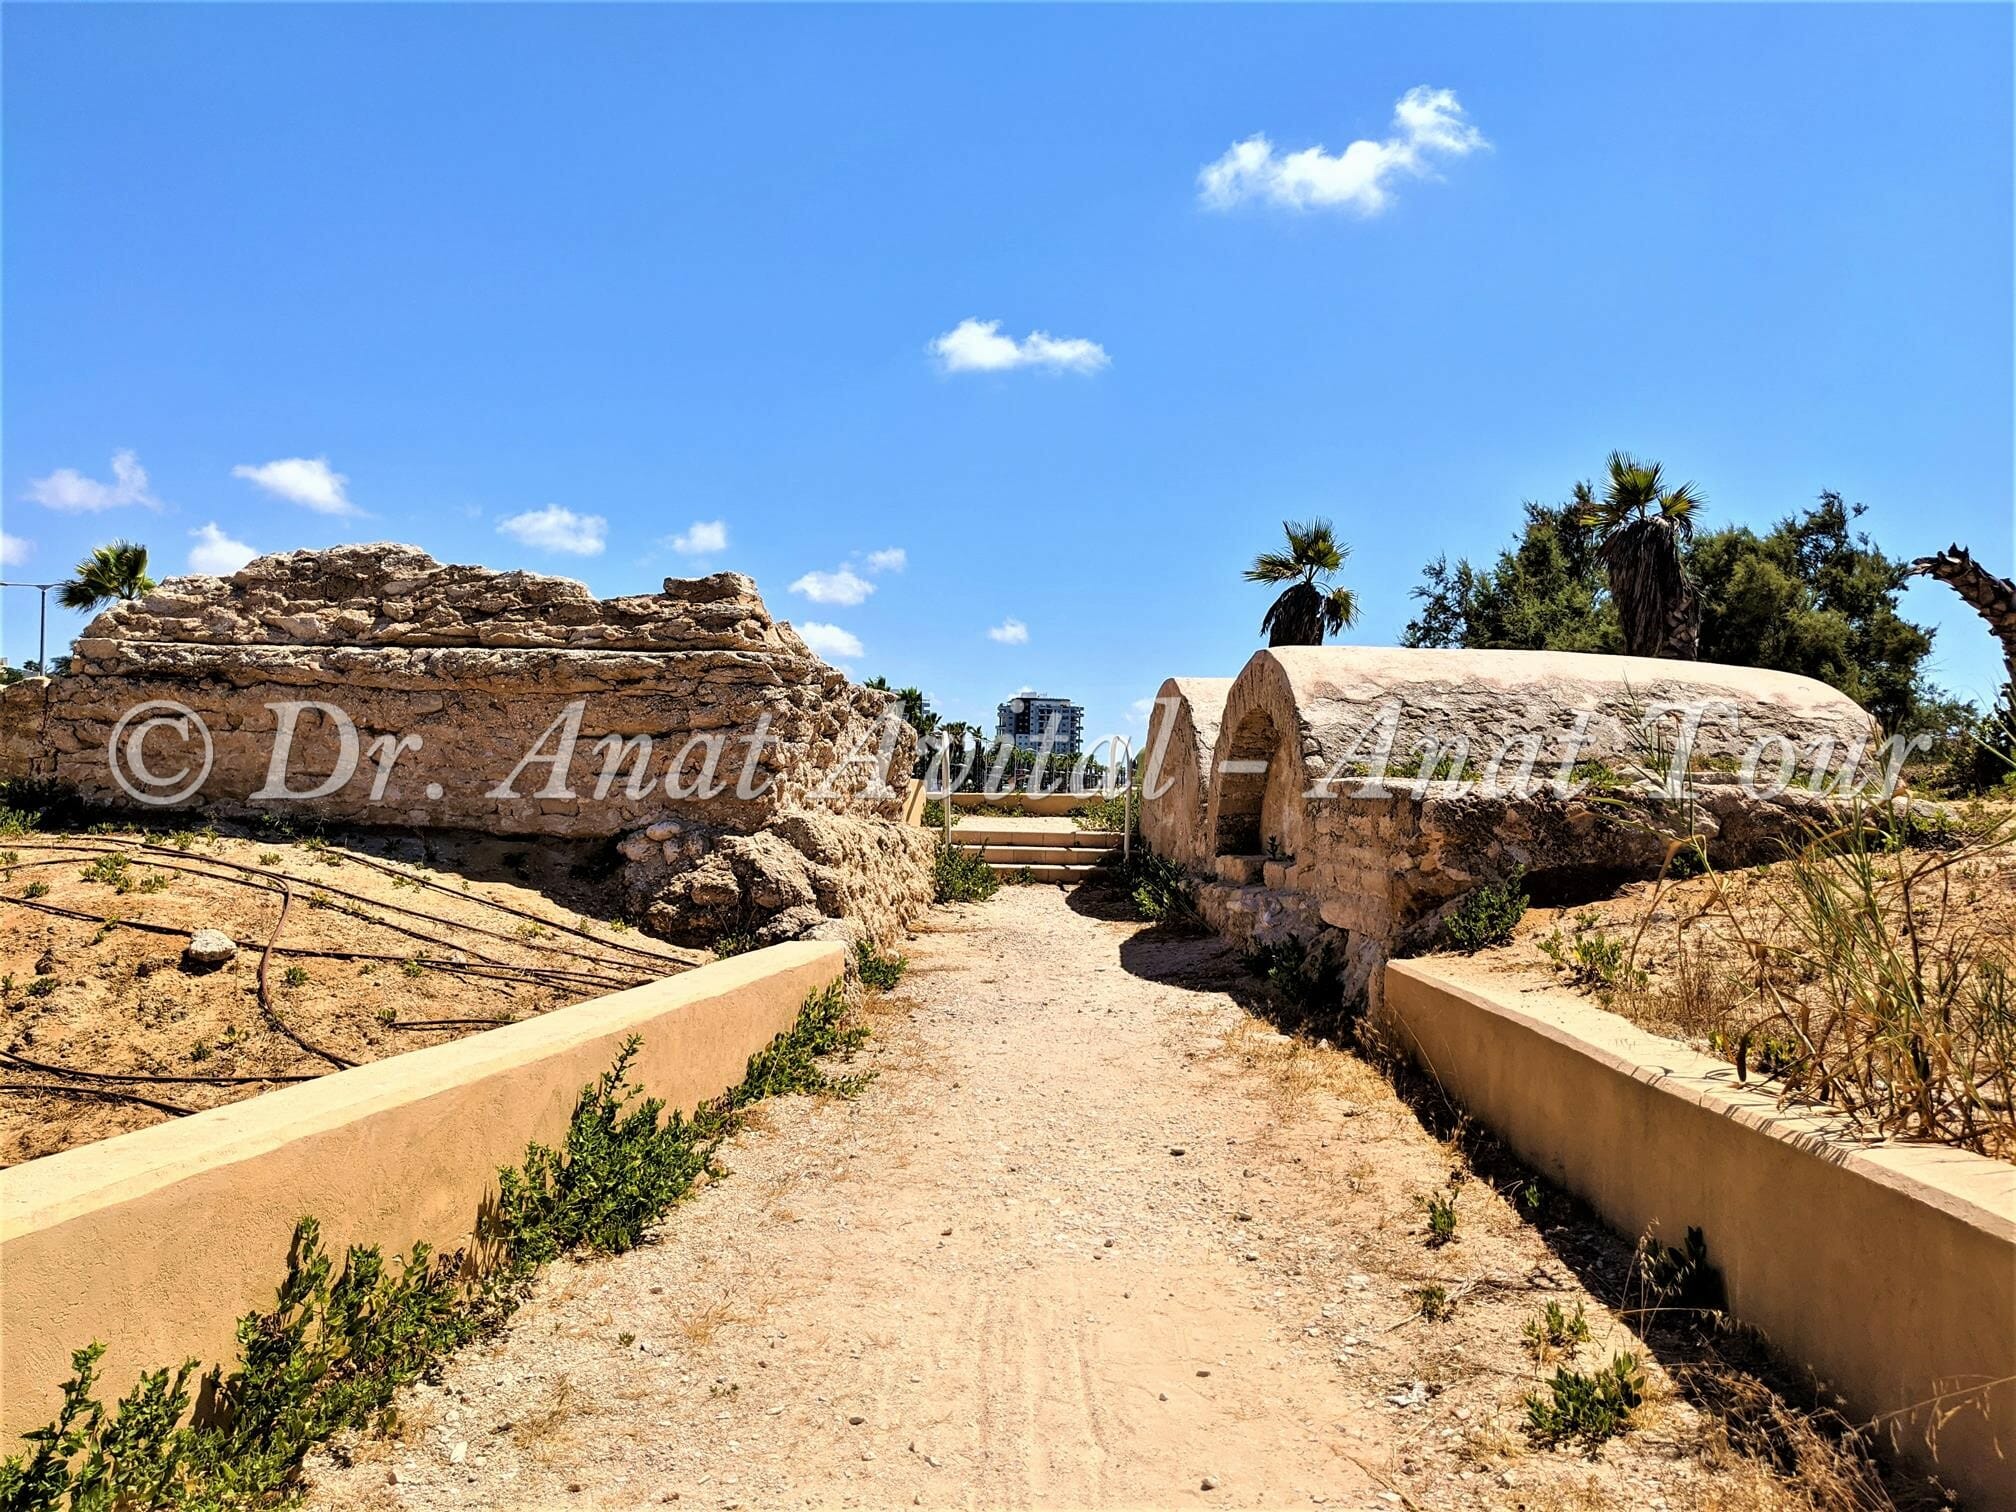 אחוזות קבר ליד מצודת אשדוד ים, צילום: ד"ר ענת אביטל